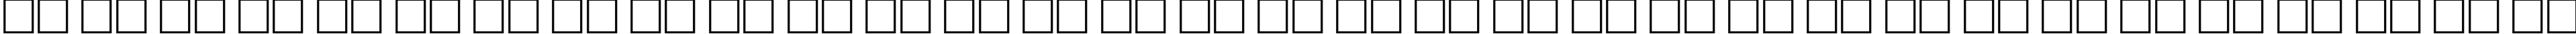 Пример написания русского алфавита шрифтом PCLook Regular